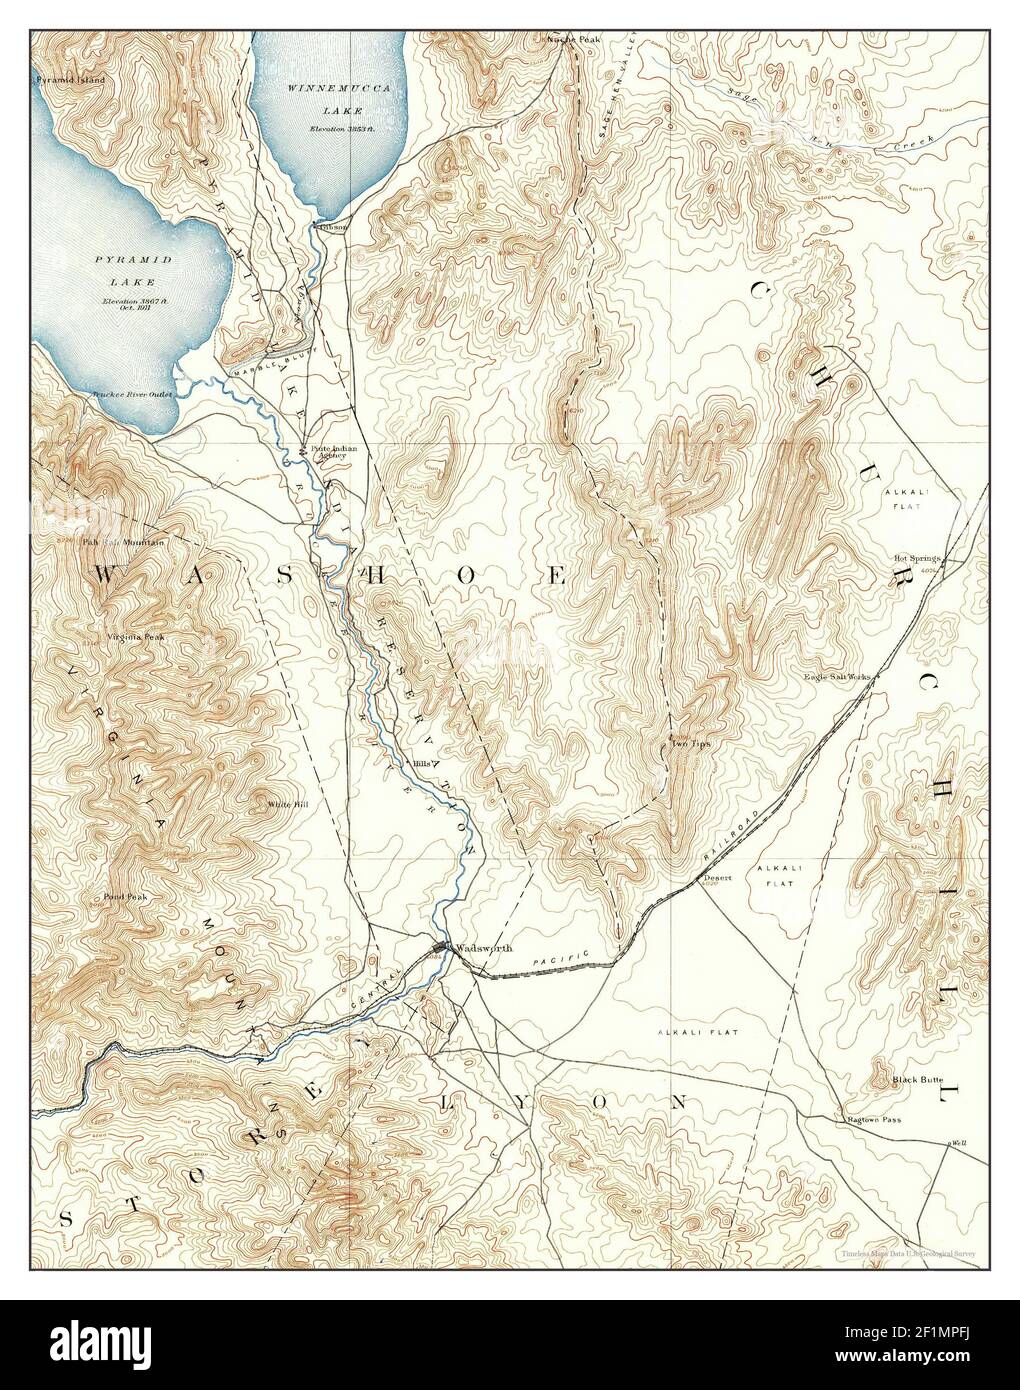 Wadsworth, Nevada, carte 1890, 1:125000, États-Unis d'Amérique par Timeless Maps, données U.S. Geological Survey Banque D'Images